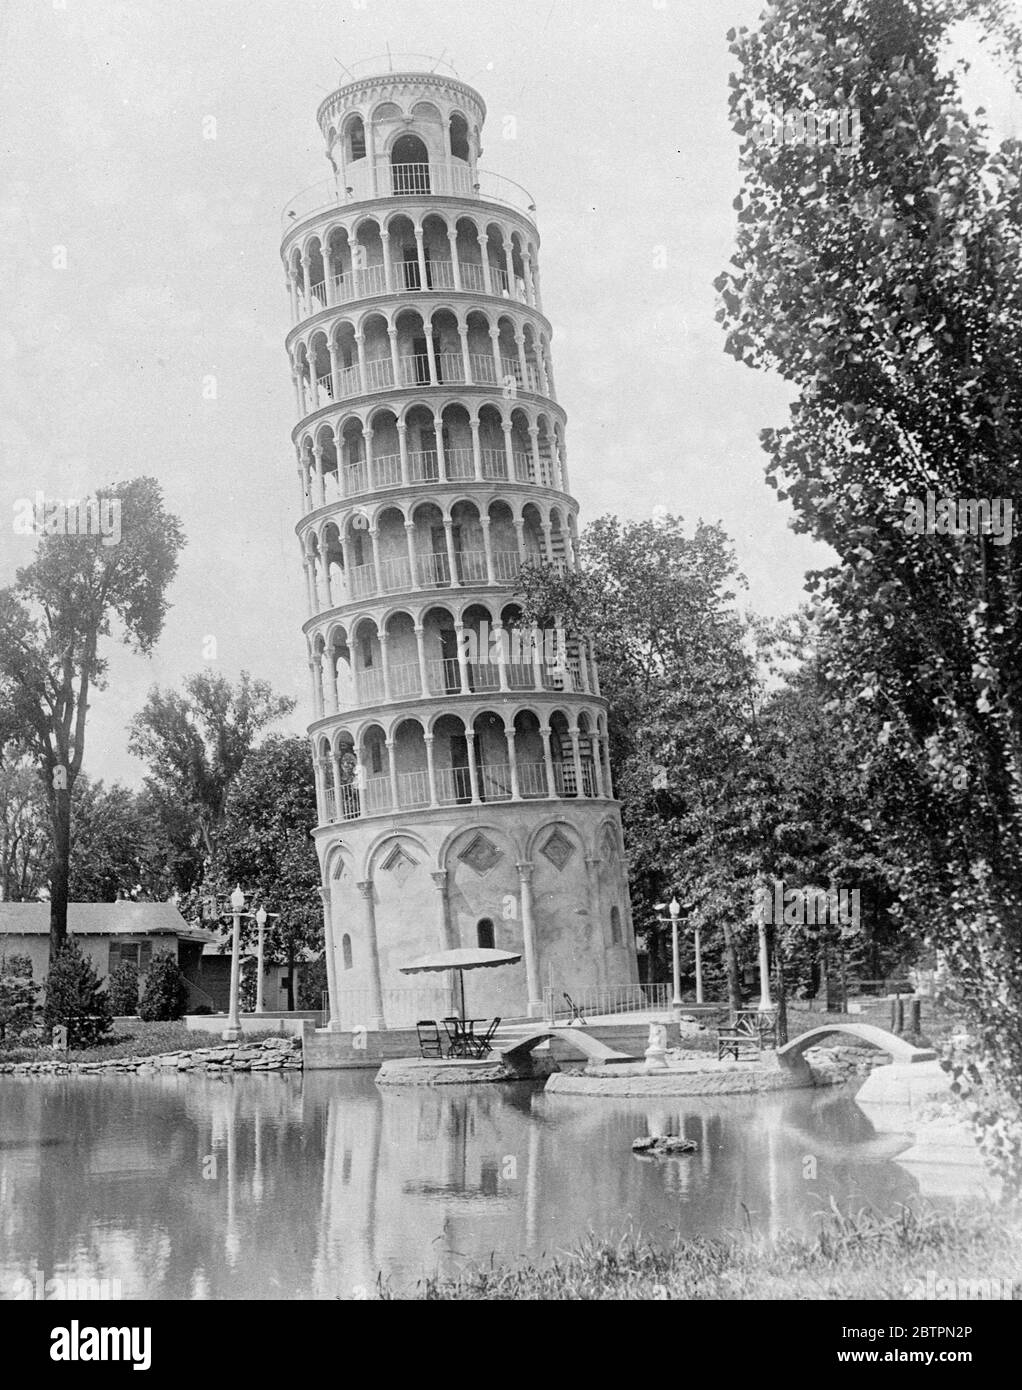 « Tour penchée » de Chicago. Une réplique de la célèbre Tour penchée de Pise, qui est érigée dans un parc de Chicago. Il mesure 94 pieds de hauteur, 28 pieds de diamètre à la base et 26 pieds au sommet, exactement la moitié de l'original italien. La tour penche 7'4 d'un fil à plomb. Banque D'Images